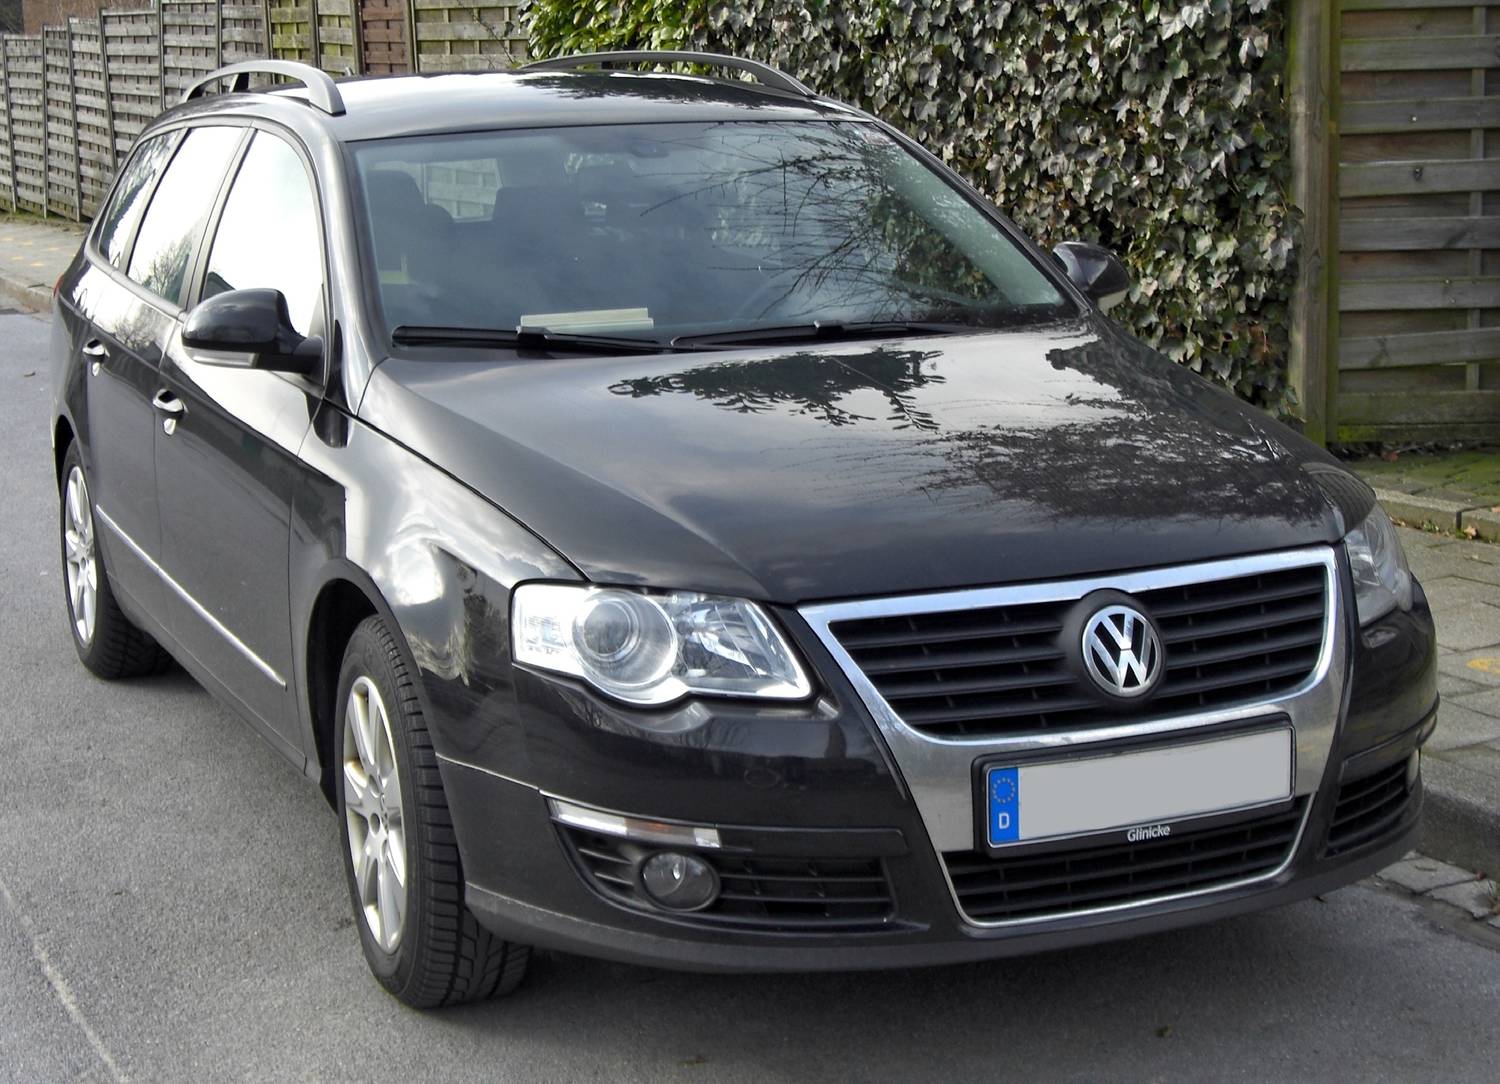 Volkswagen Passat, B6, 2005-2010